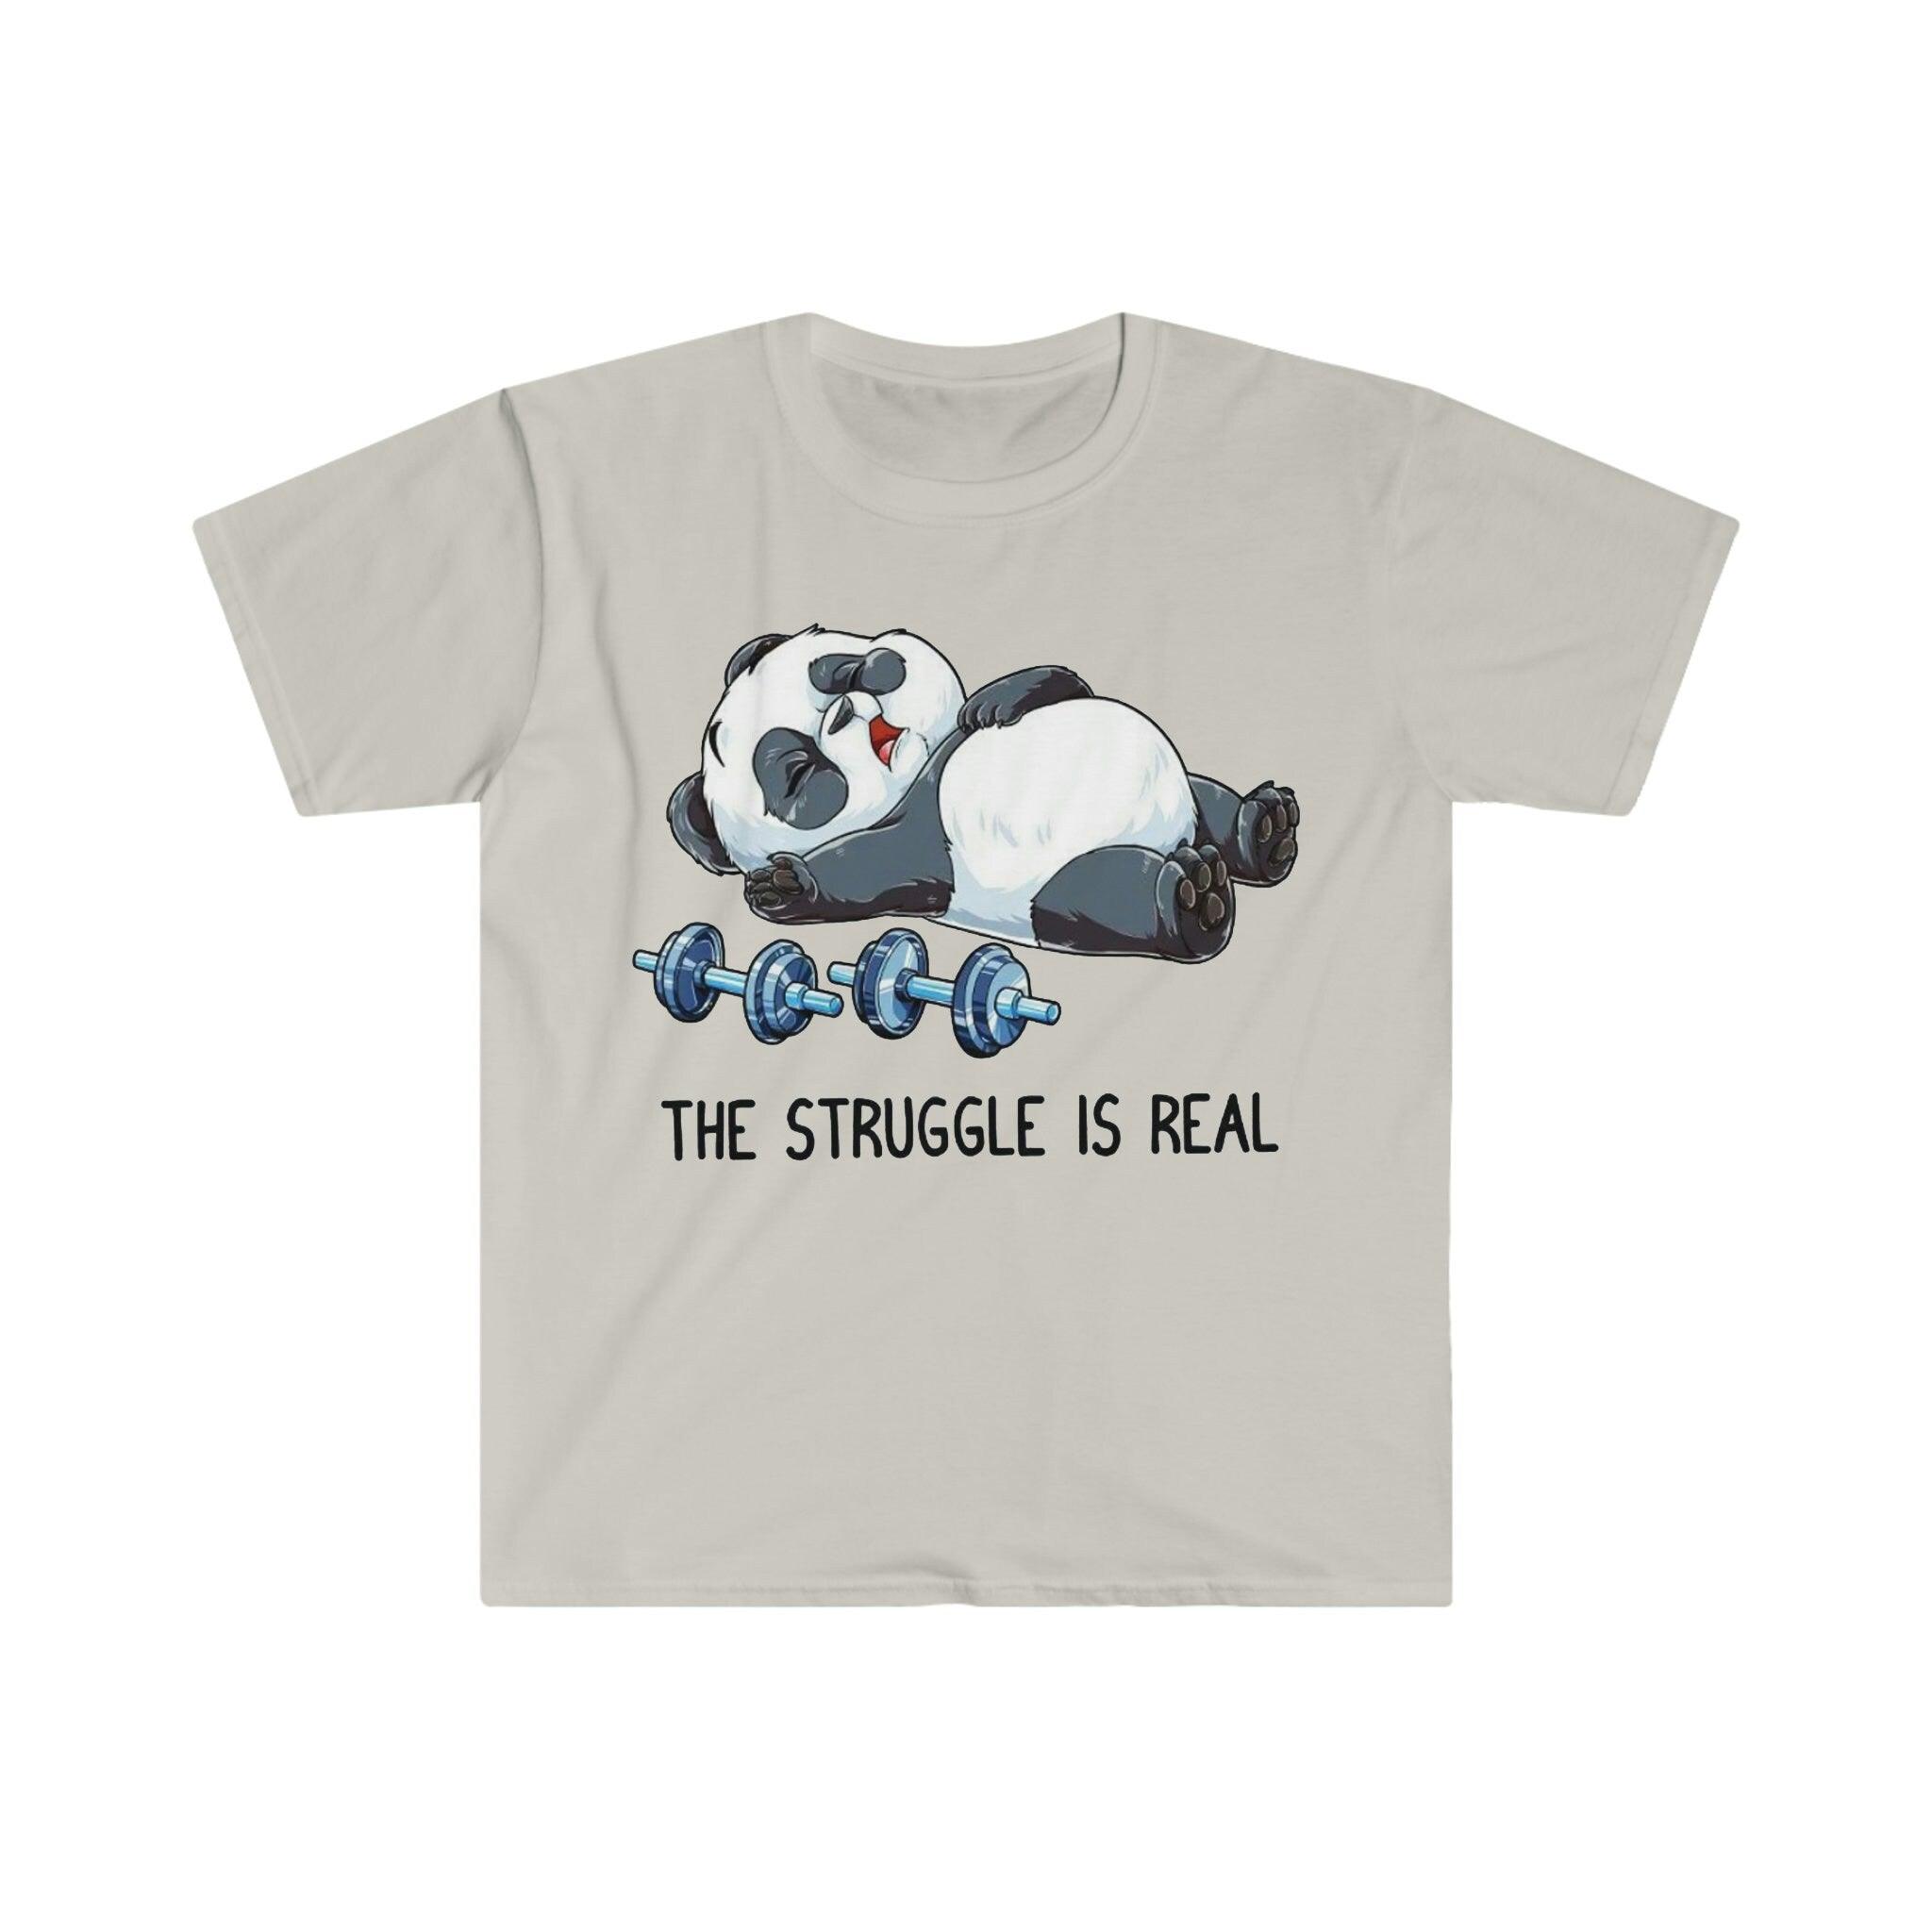 The Struggle Is Real Panda 重量挙げ T シャツ、重量挙げフィットネス ジム面白い T シャツ、ワークアウト シャツ、フィットネス シャツ ビースト モード ウェイト、面白いフィットネス、フィットネス ジム、フィットネス シャツ、面白い皮肉なジム、面白い T シャツ、ジム エクササイズ T シャツ、パンダ闘争、闘争は本物、T シャツ、T シャツ、重量挙げ、重量挙げパンダ、重量挙げ T シャツ、ワークアウト シャツ - plusminusco.com